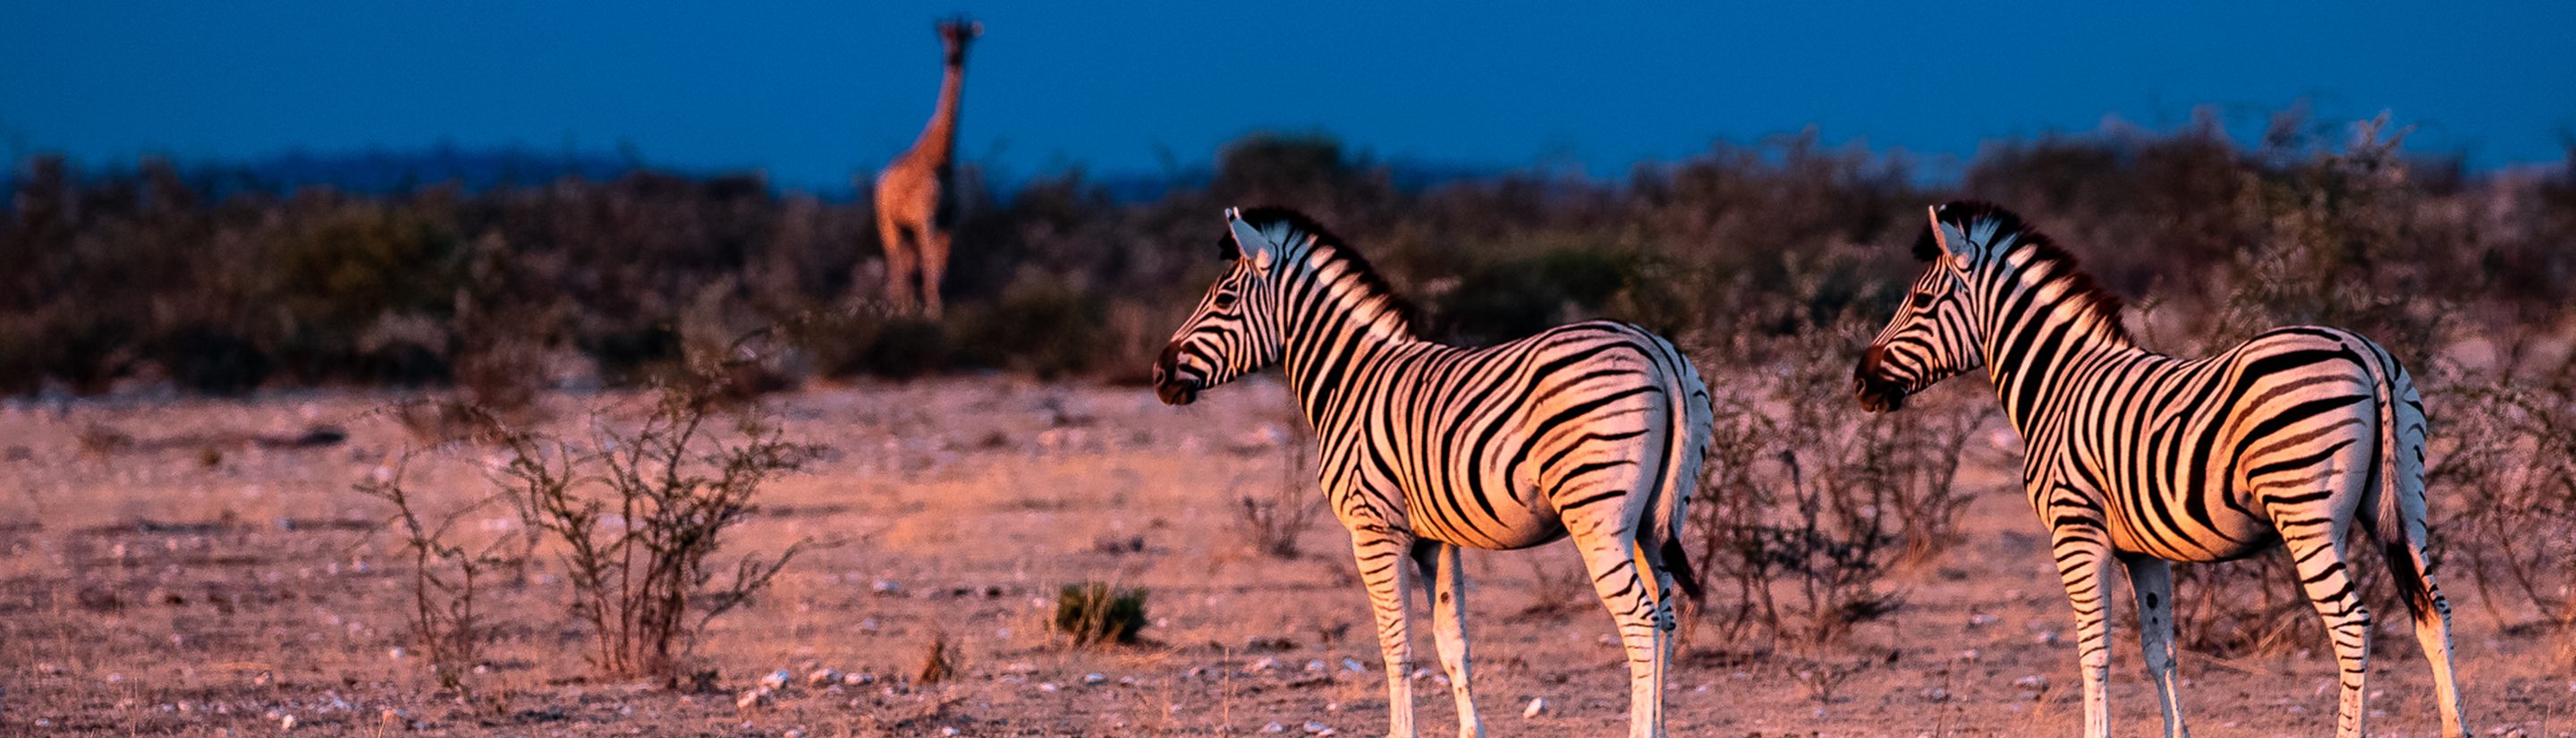 Etosha-Nationalpark – Tipps für Ihre Safari in Namibia